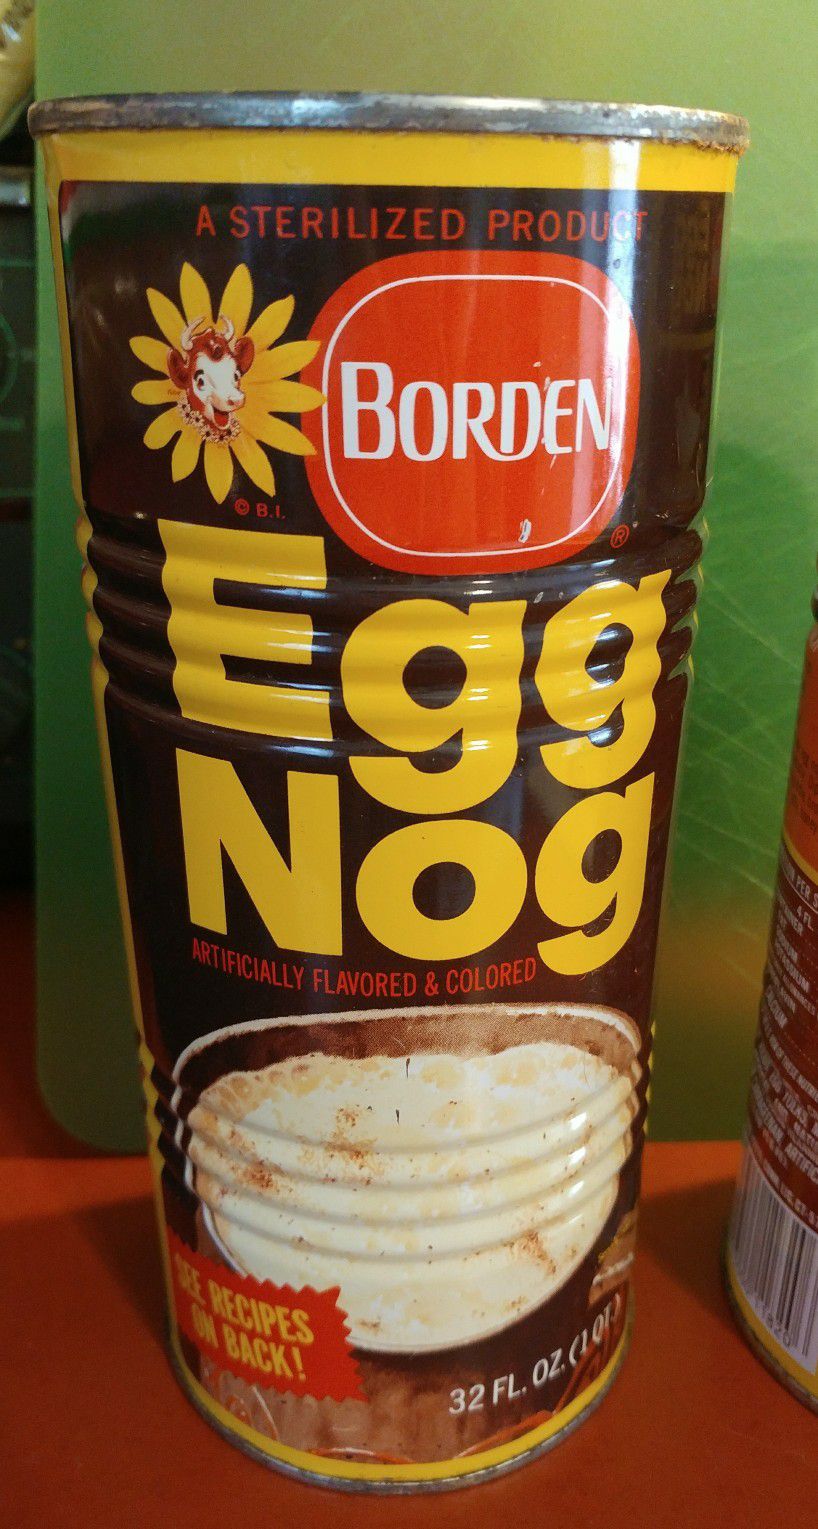 Borden Canned Eggnog